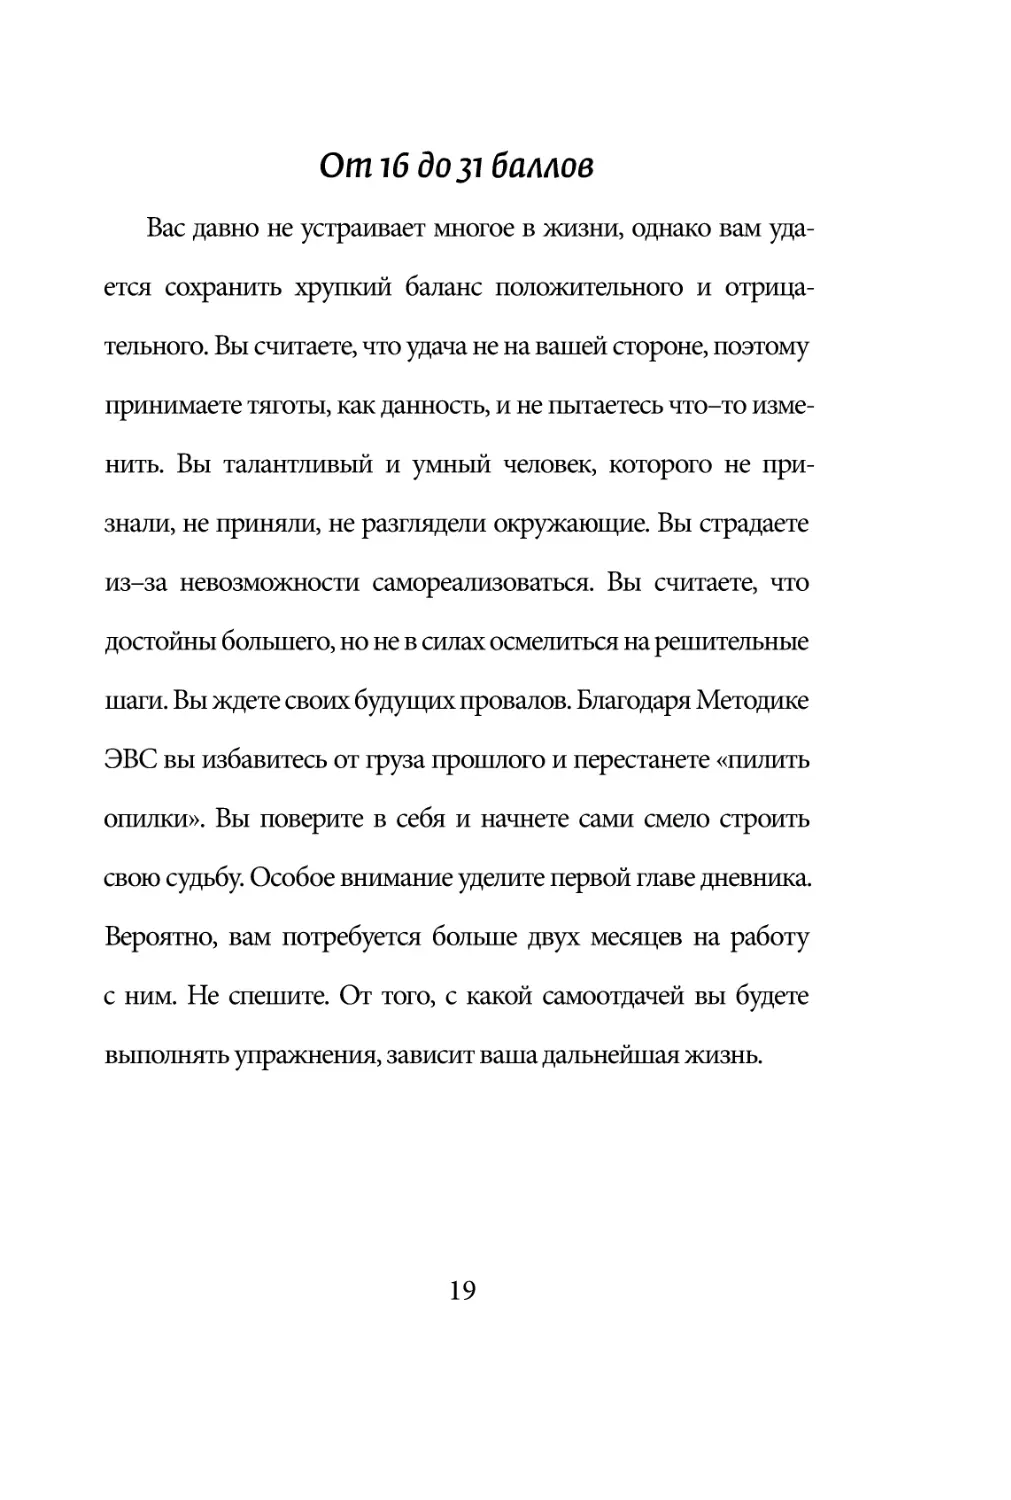 Sergey_Filippov_Dnevnik_samorazvitia_Evolyutsia_Vnutrennego_Sostoyania_19.pdf (p.19)